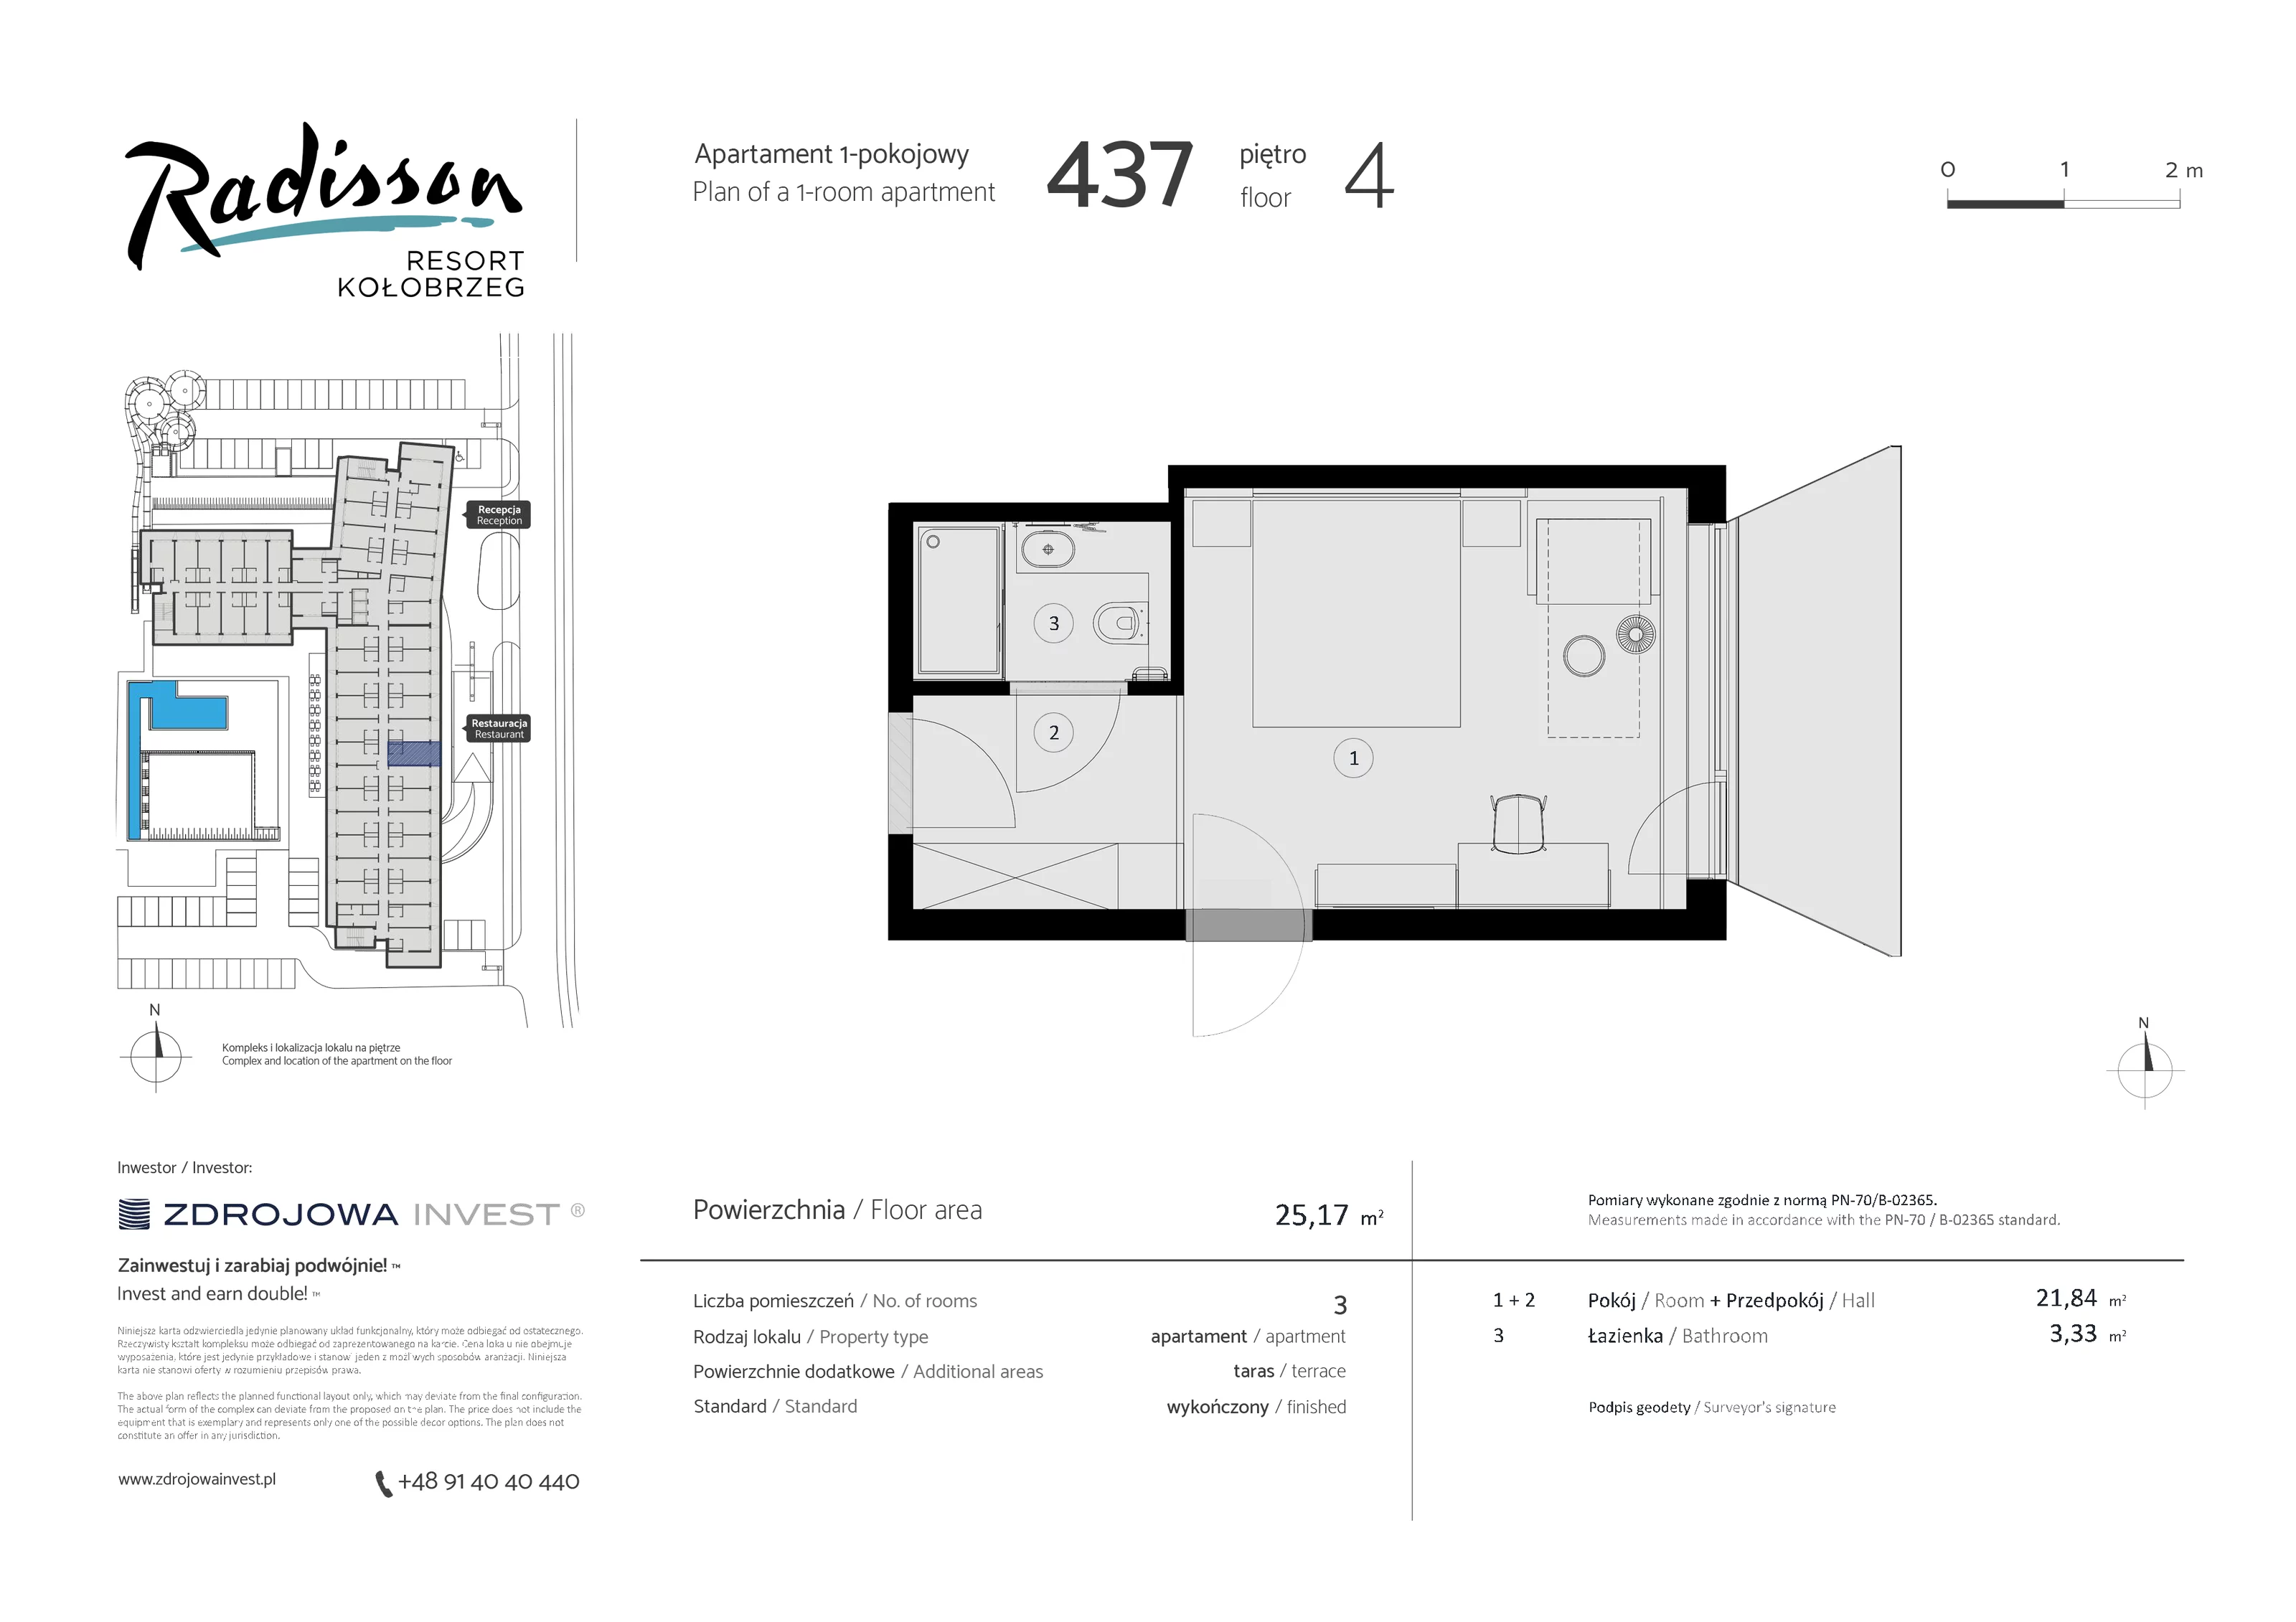 Apartament inwestycyjny 25,17 m², piętro 4, oferta nr 437, Radisson Resort Kołobrzeg, Kołobrzeg, ul. Morawskiego 10